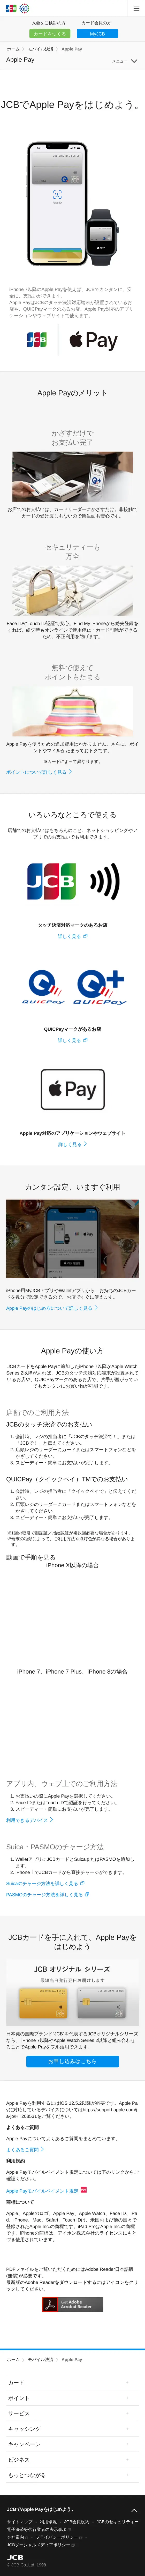 キャプチャ画面 会社名:株式会社ジェーシービープロジェクト名:Apple Pay 画面名:A デバイス名:SPカテゴリ:金融・保険タグ:SP,A